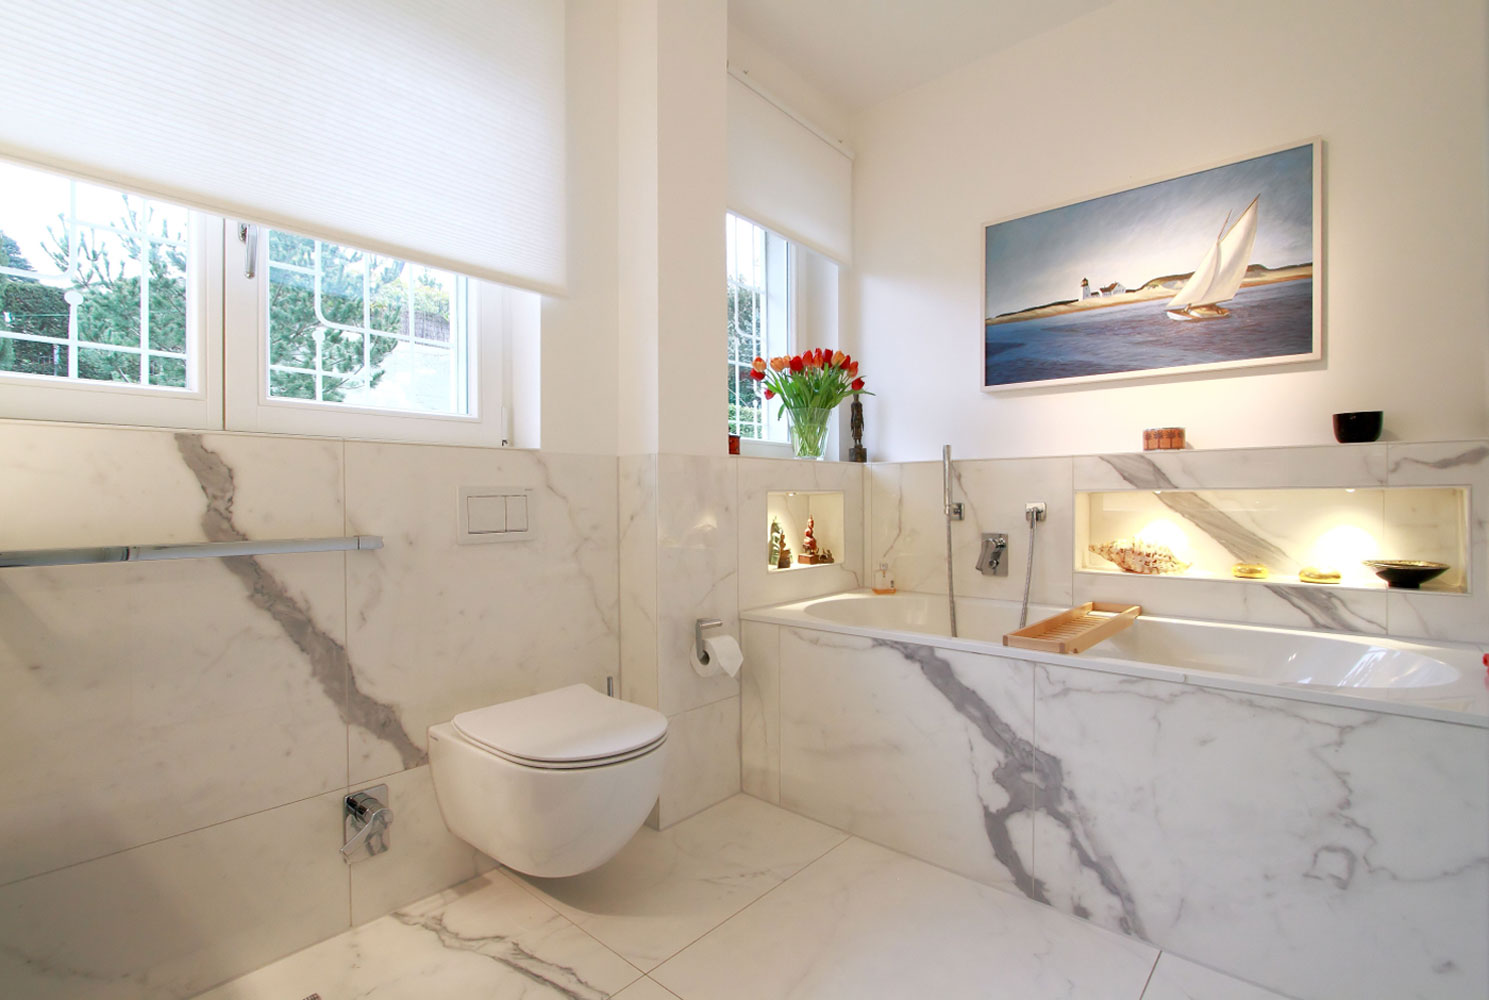 Innovative Dusch-WCs, spülrandlose Toiletten und berührungslose Betätigungsplatten machen Sauberkeit im Badezimmer kinderleicht